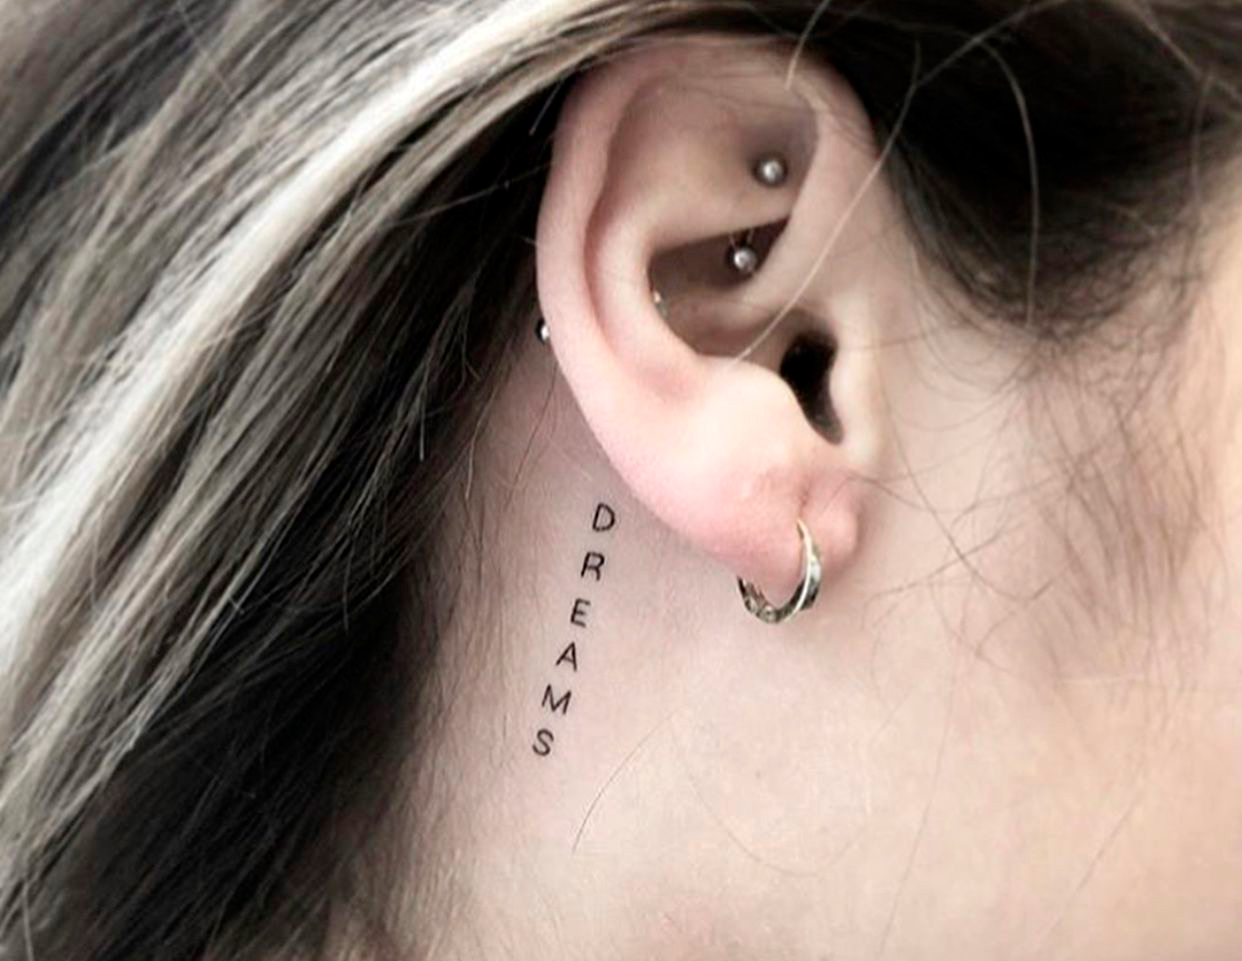 Тату на ушах- для неординарных tattoo особ. тату на ухе — необычные идеи для татуировок в области уха тату за ухом цветы